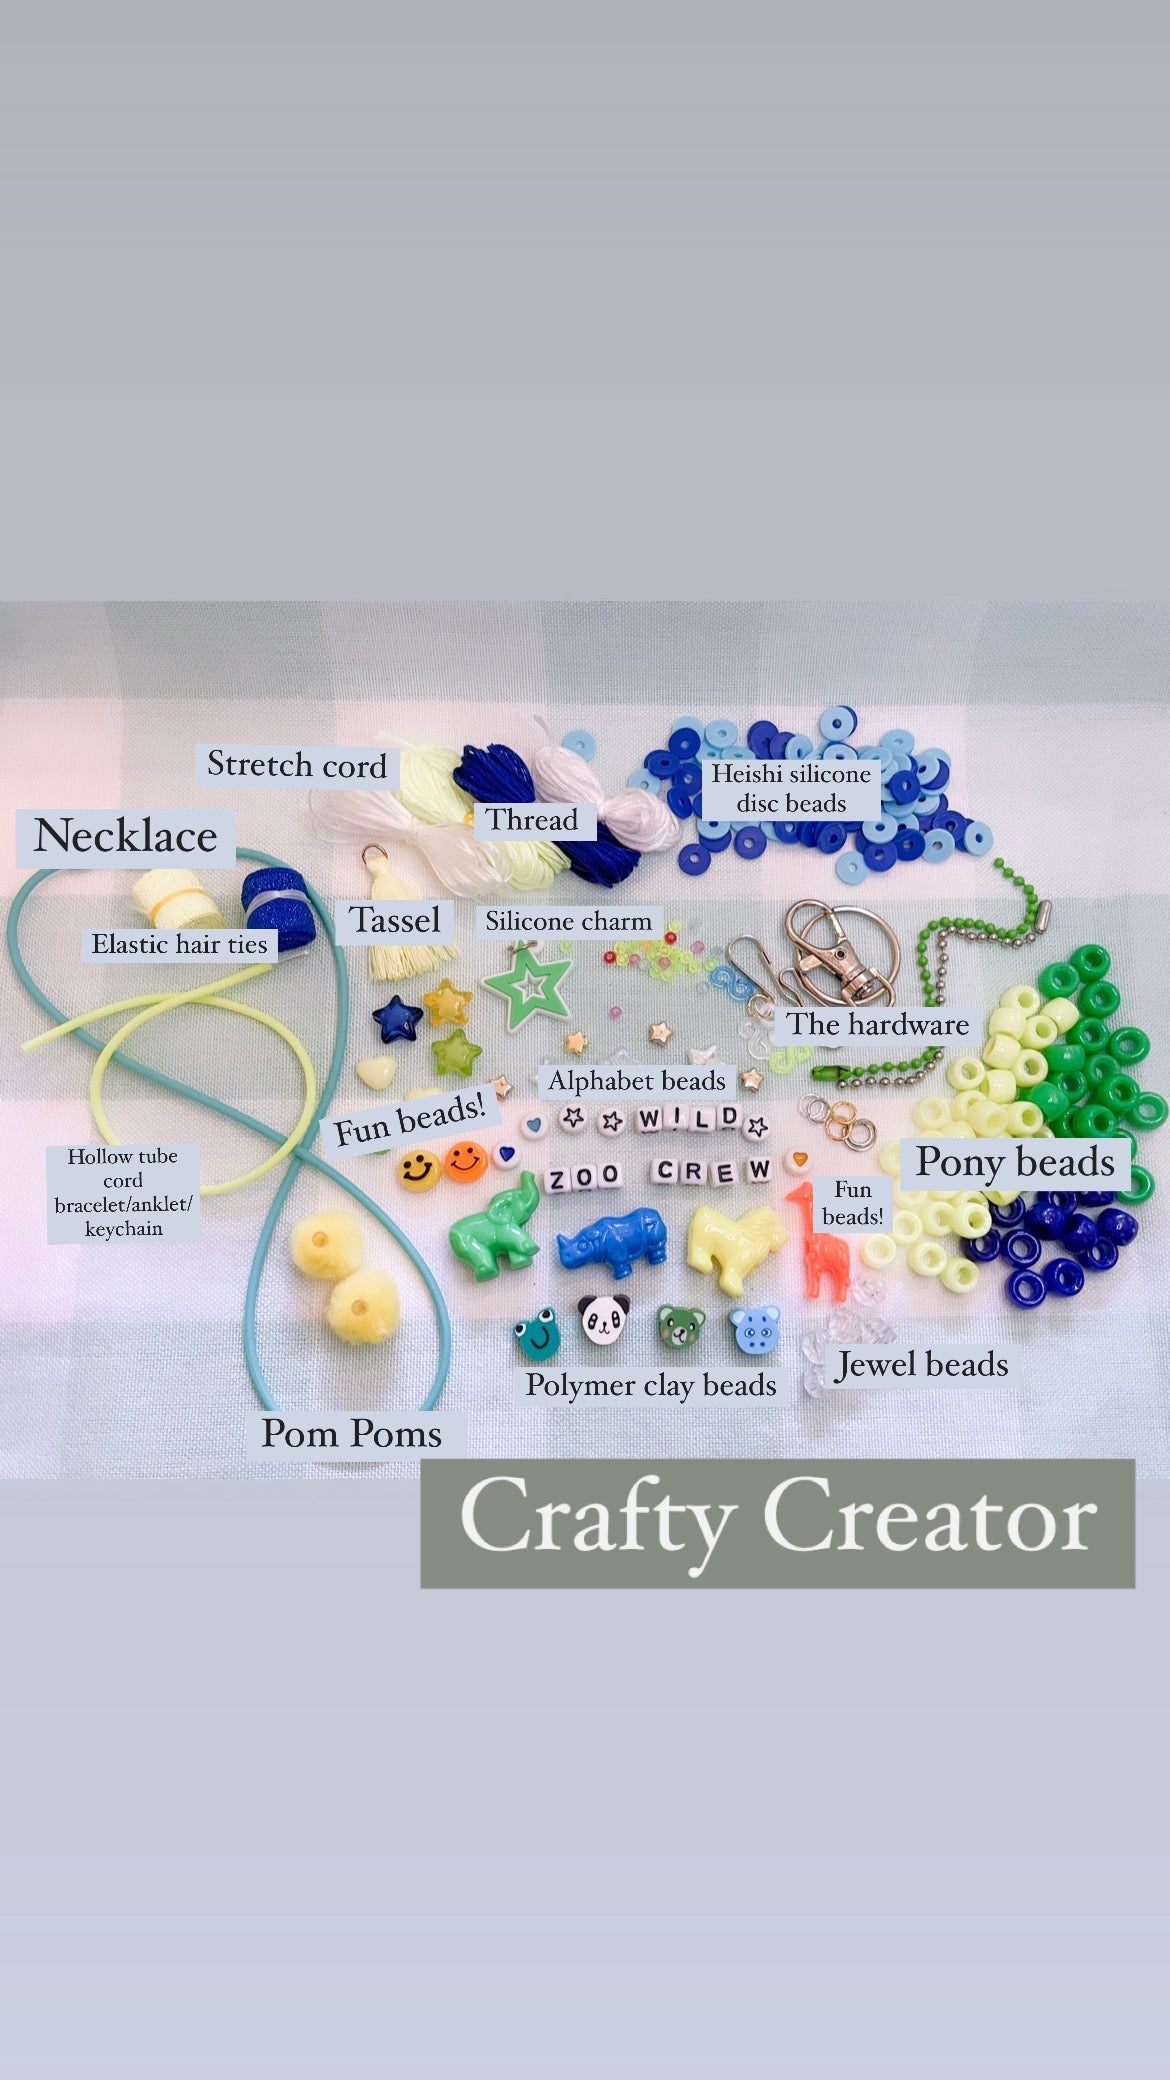 Create Crates - FUN themes